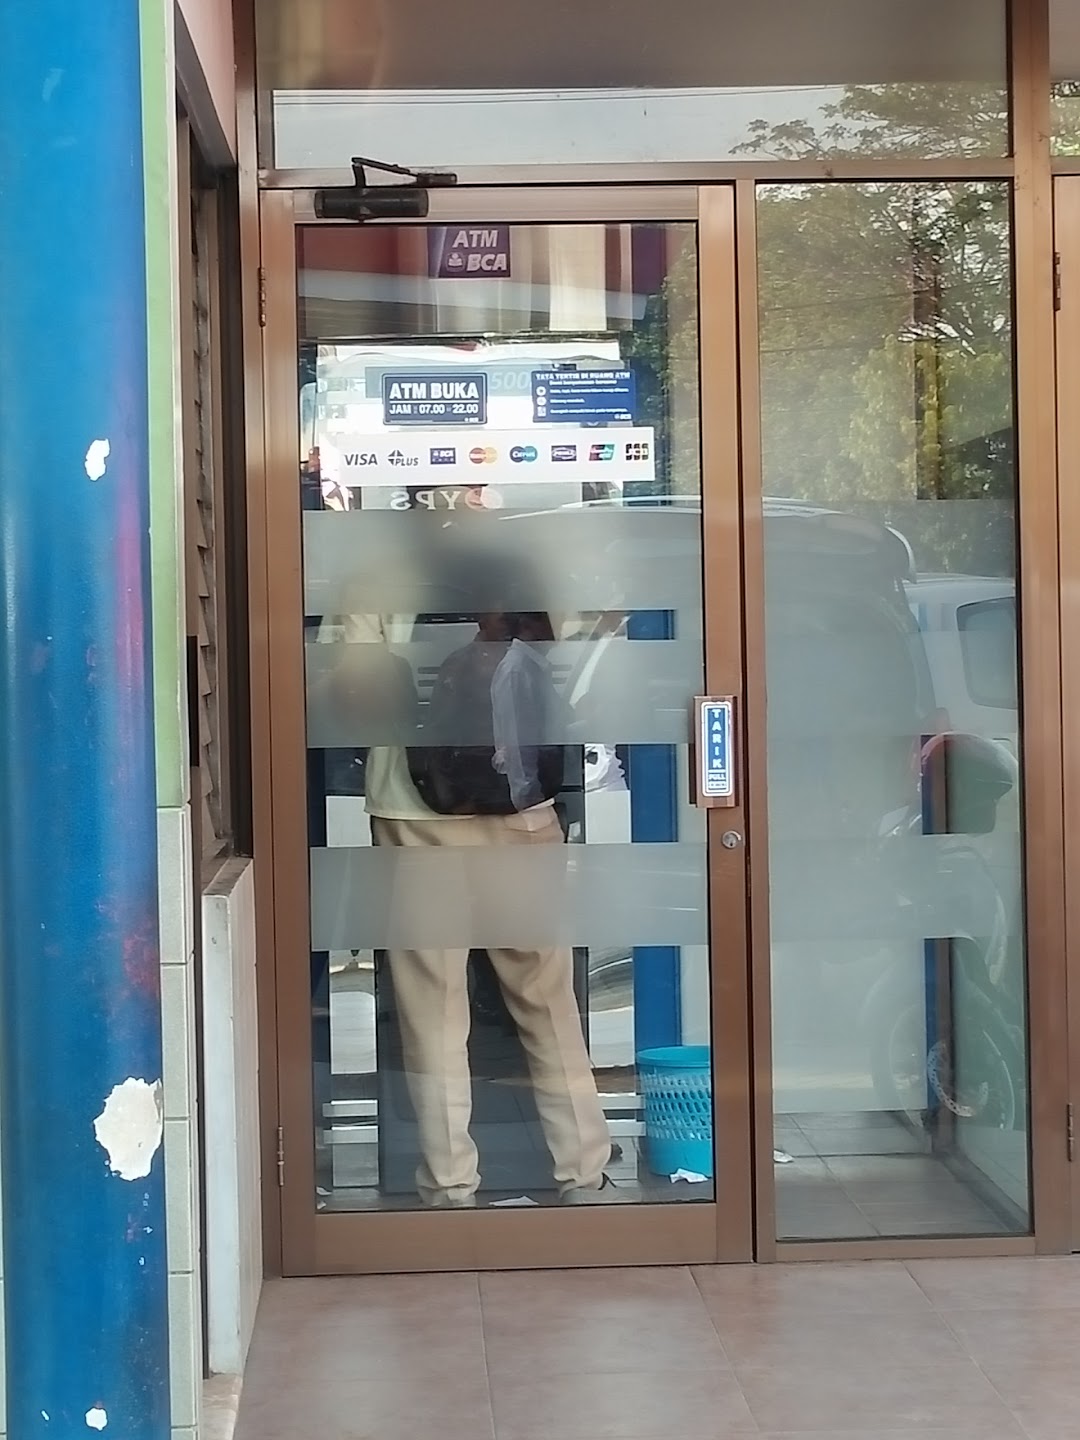 ATM Bank BCA 038U-SPBU Karang Ketug